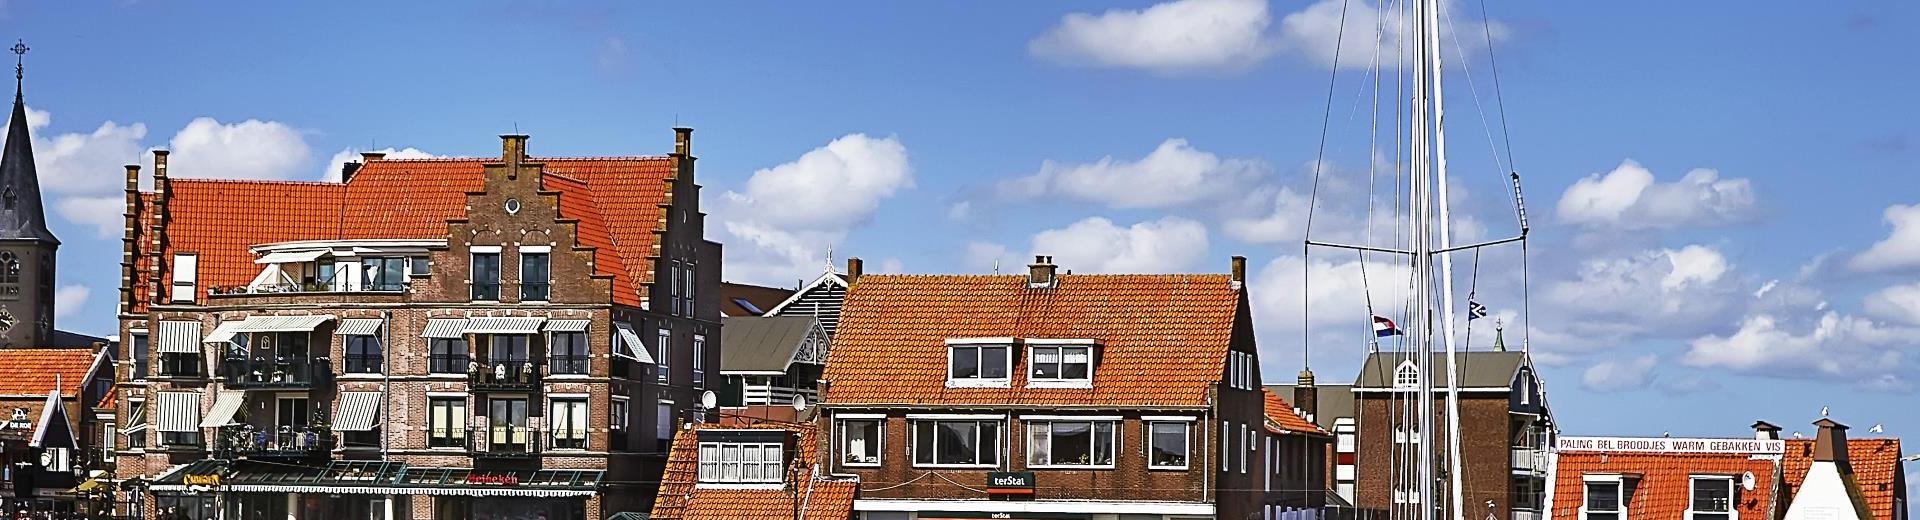 Vakantiehuis Harlingen - een gezellige havenstad in Friesland - EuroRelais